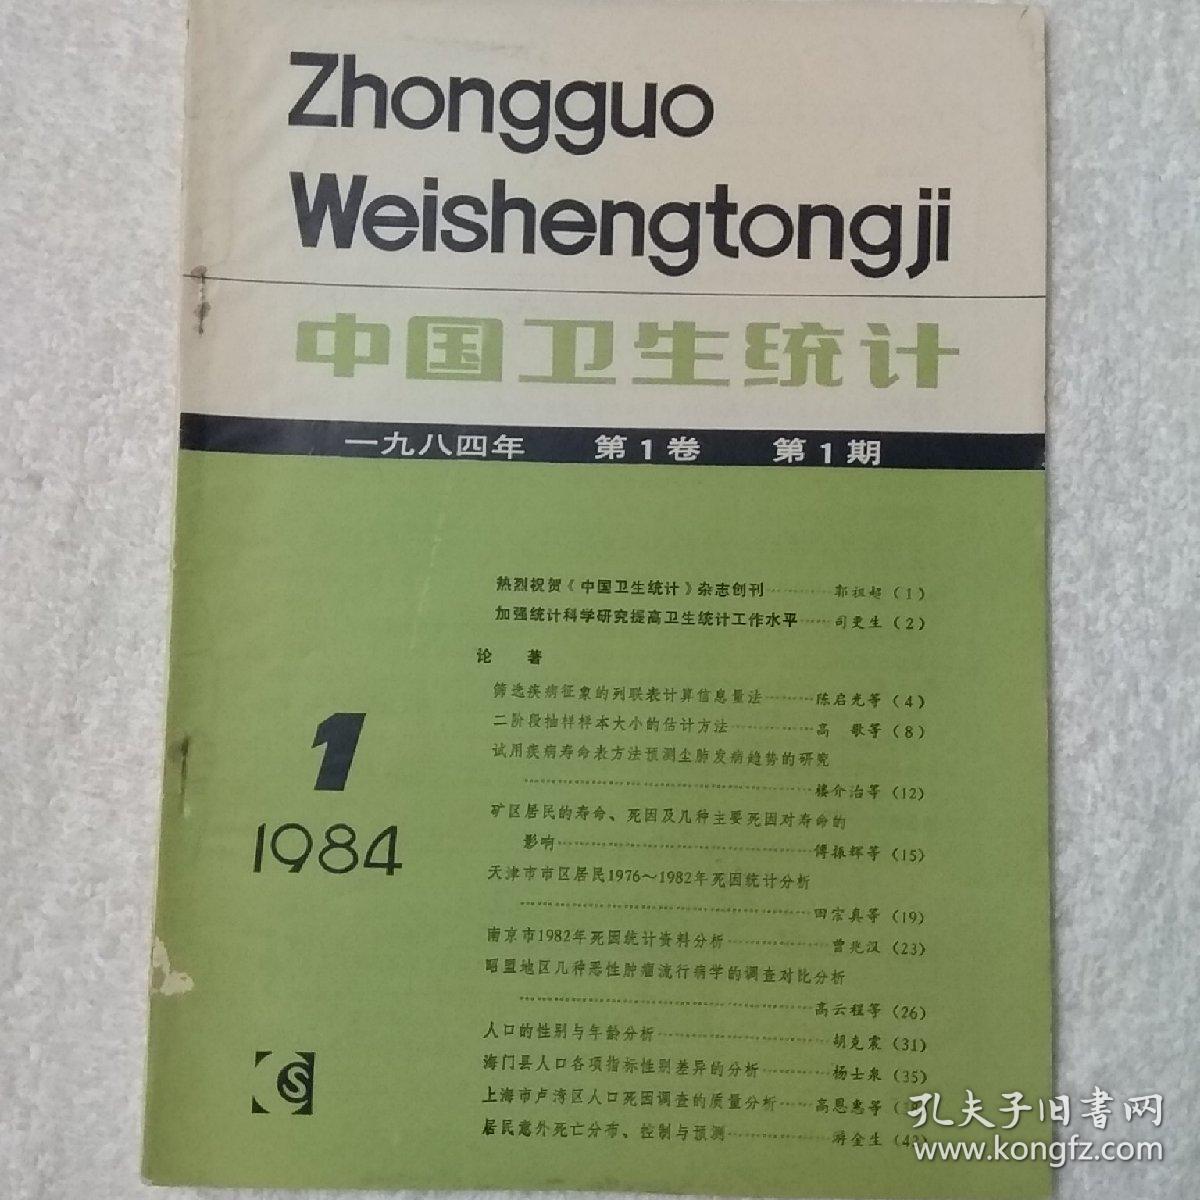 1984年第一卷第一期《中国卫生统计》季刊